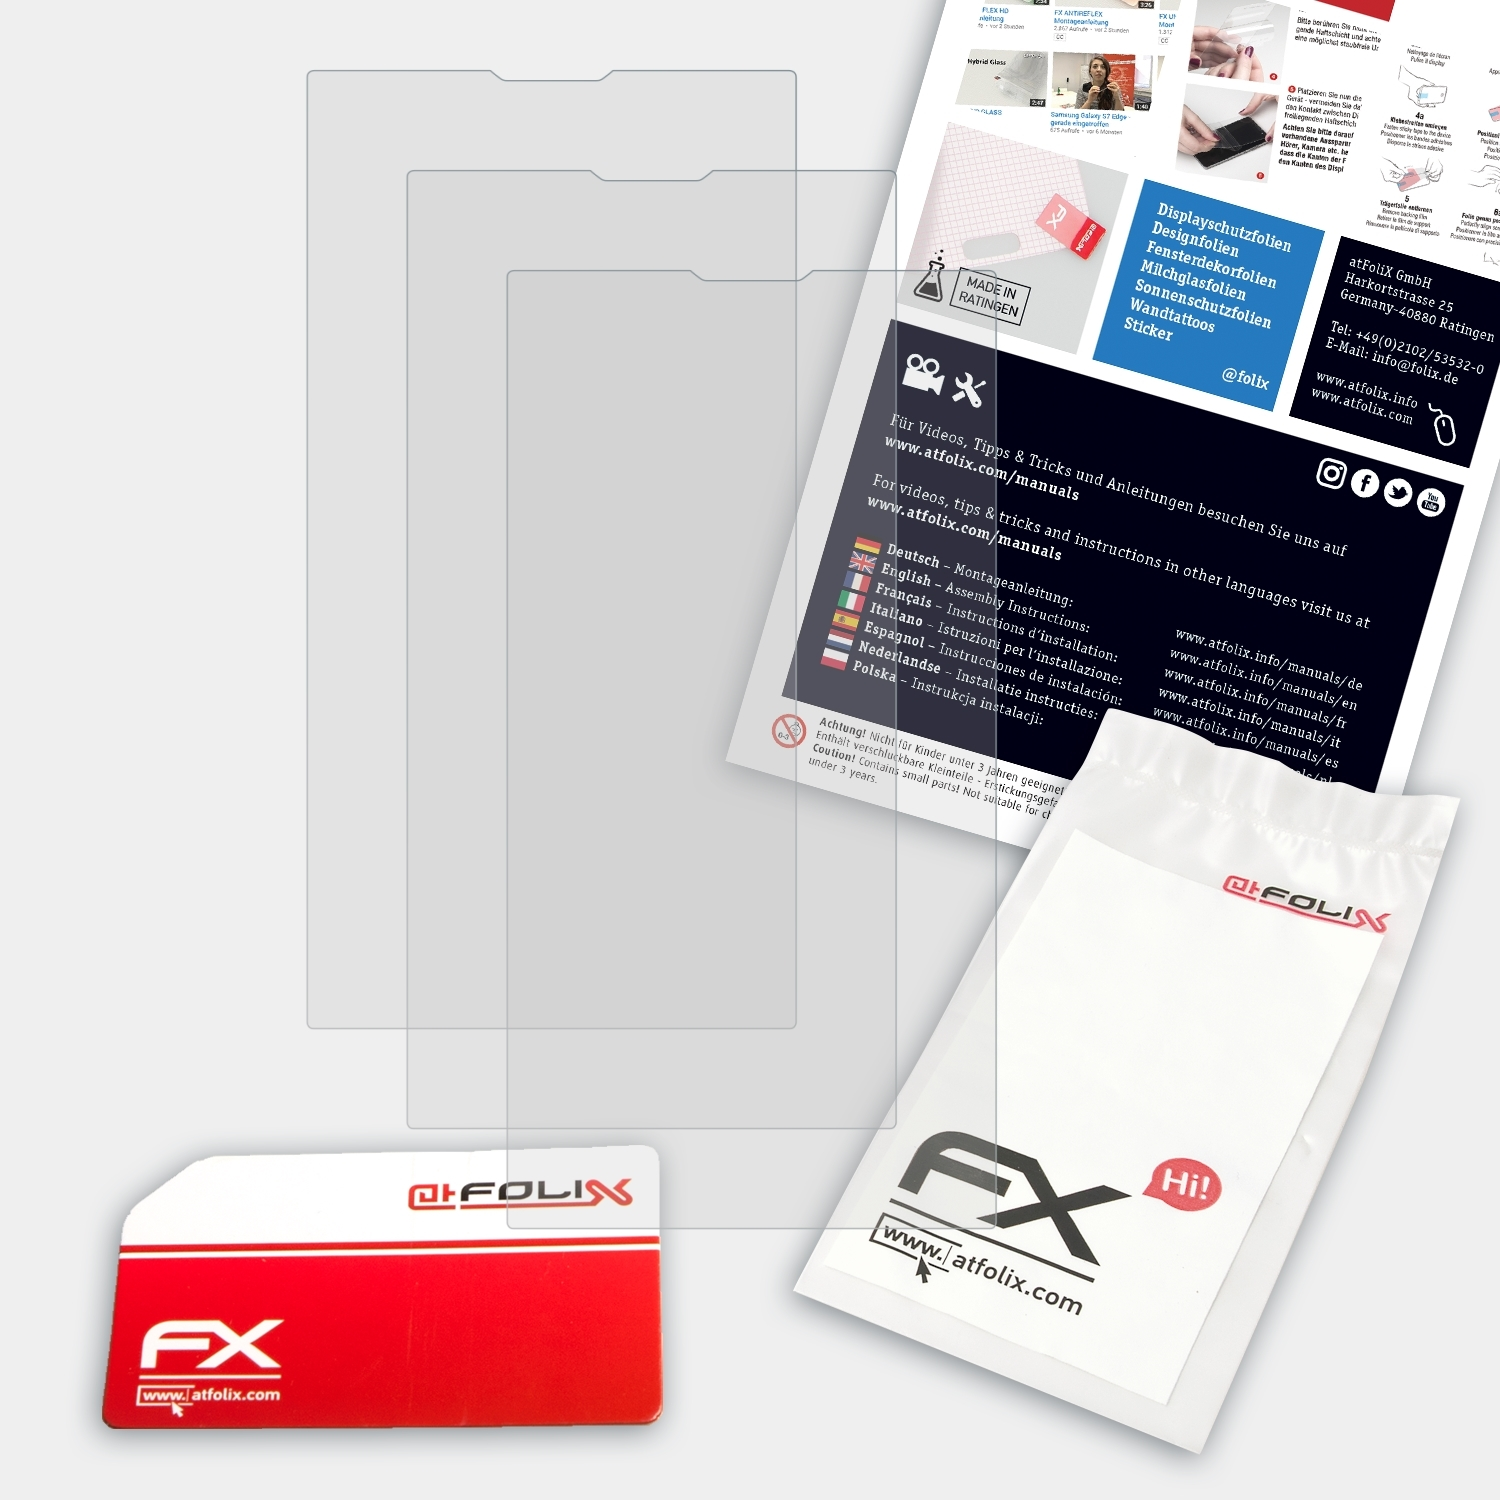 FX-Antireflex Archos 3x Displayschutz(für ATFOLIX 50b Oxygen)